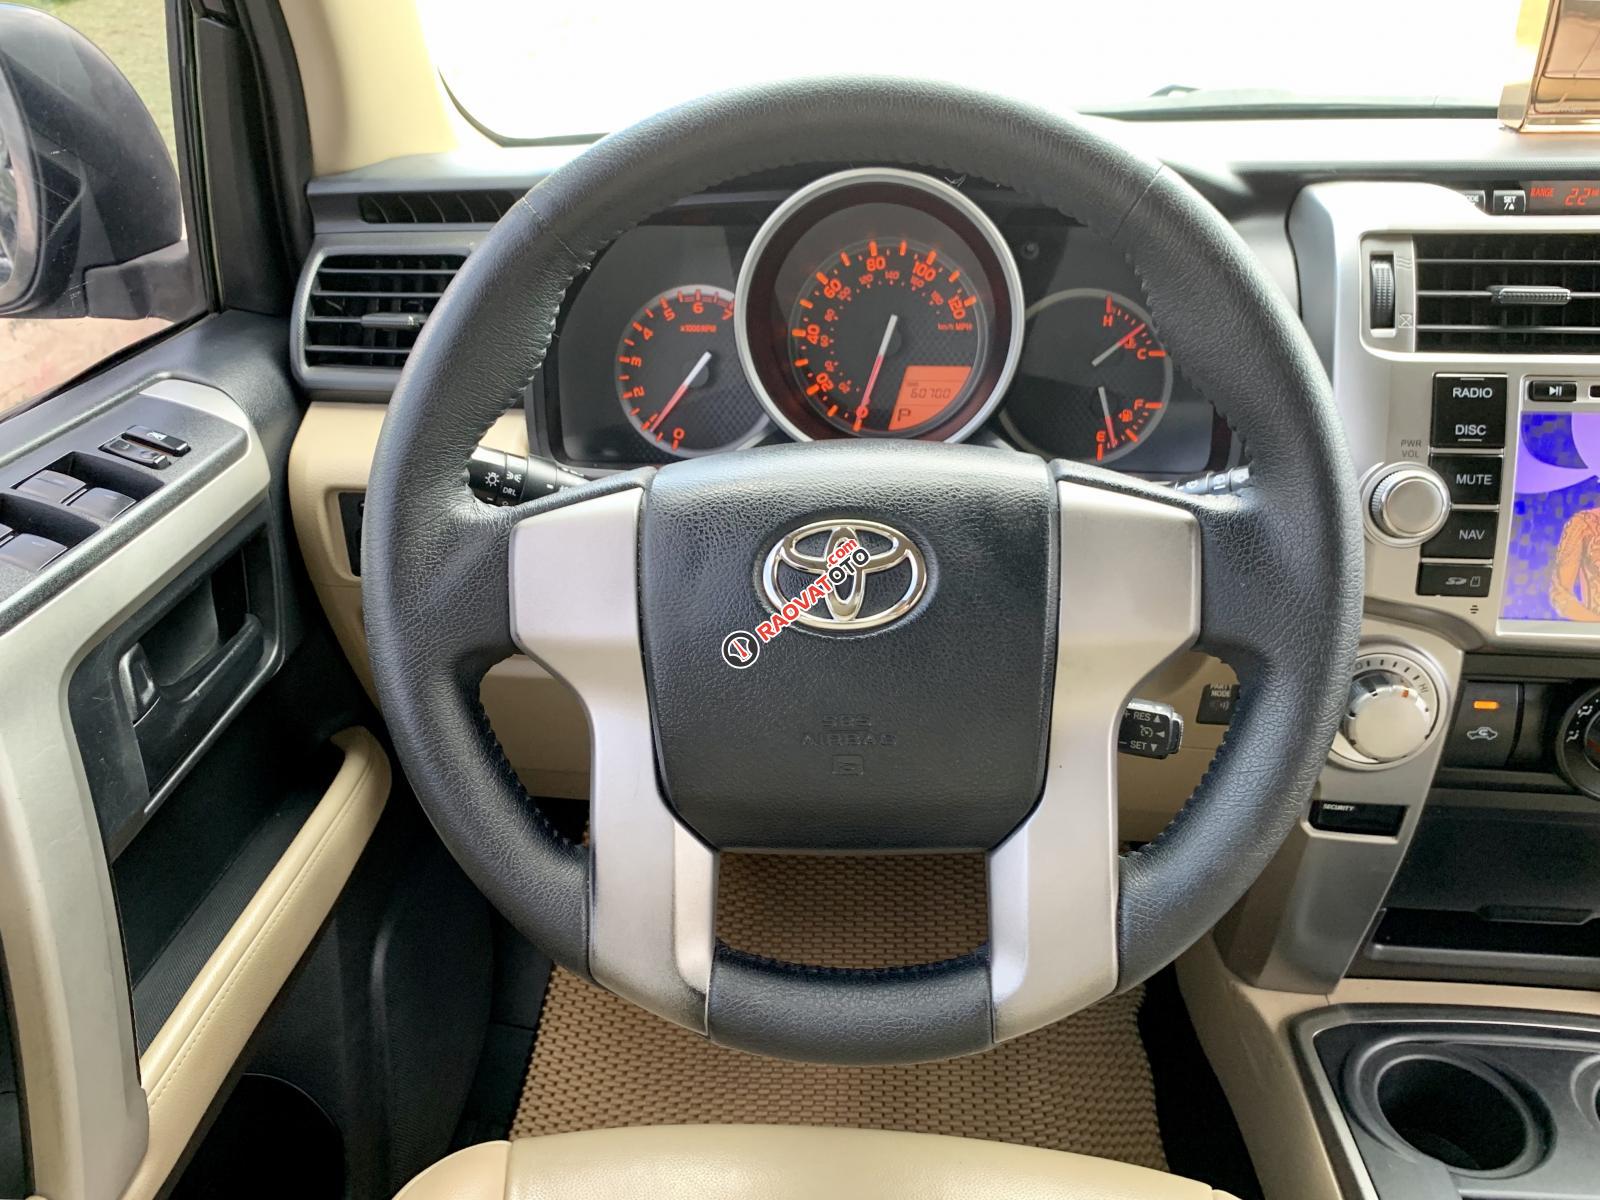 Bán Toyota 4Runner nhập Mỹ 2011 hơn 4 tỷ loại cao cấp, 5 chỗ, gầm cao, số tự động-9